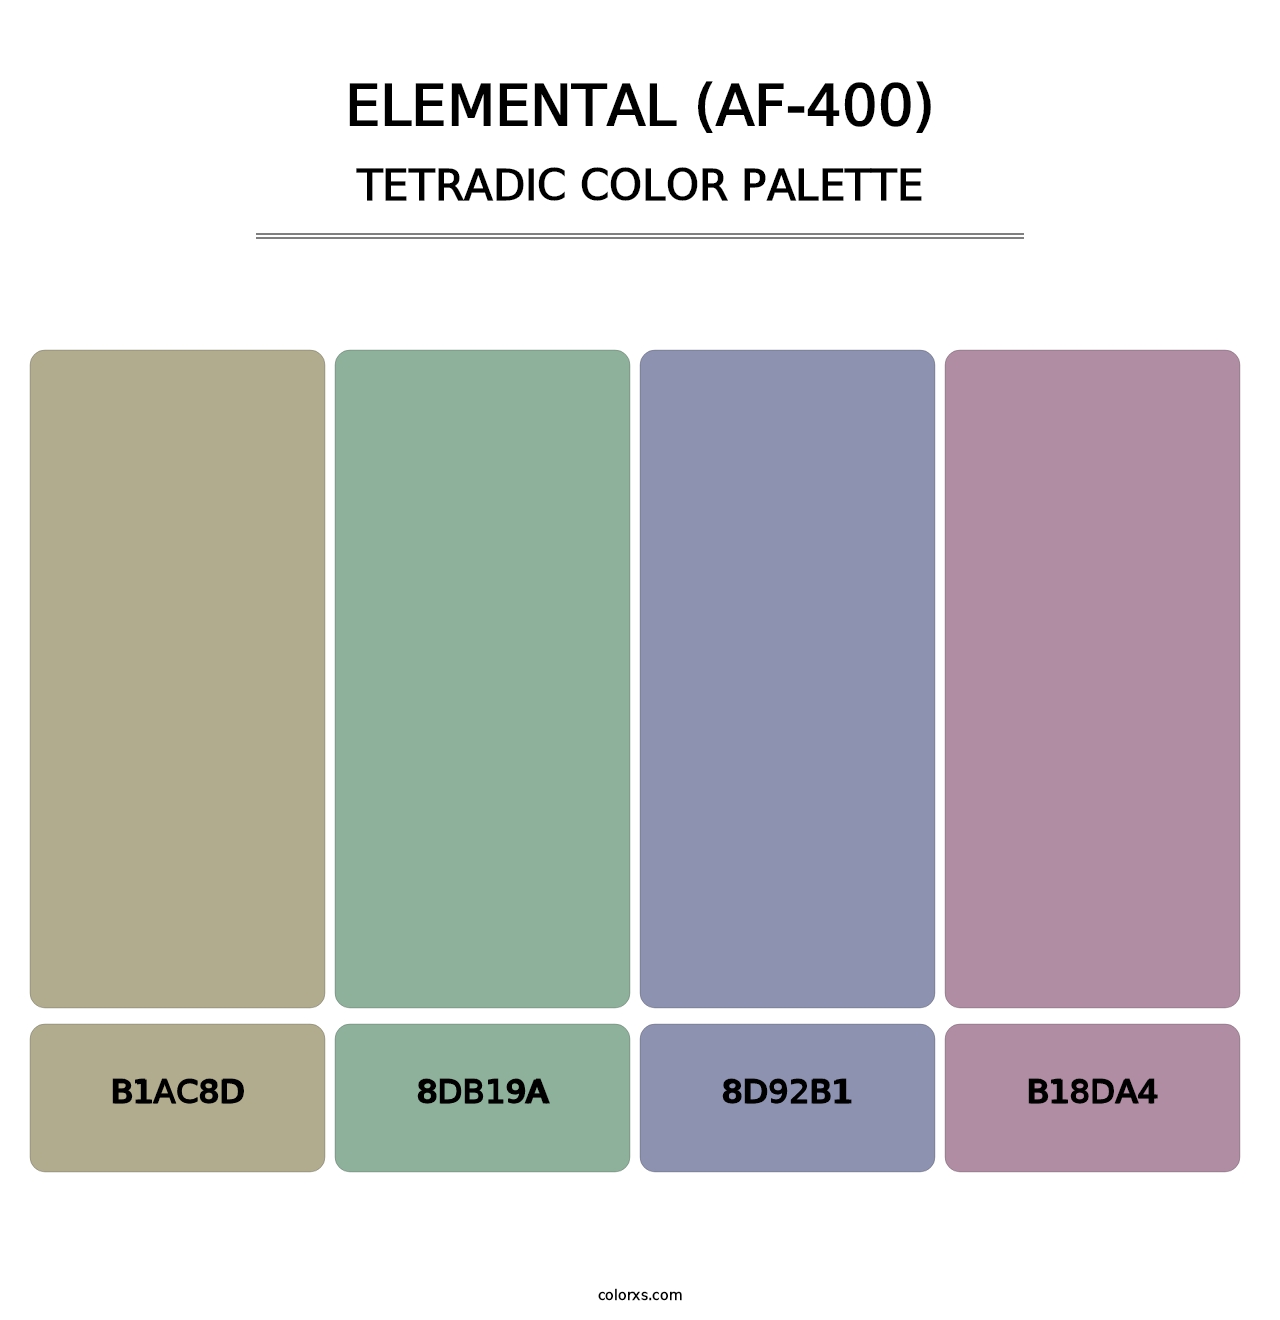 Elemental (AF-400) - Tetradic Color Palette